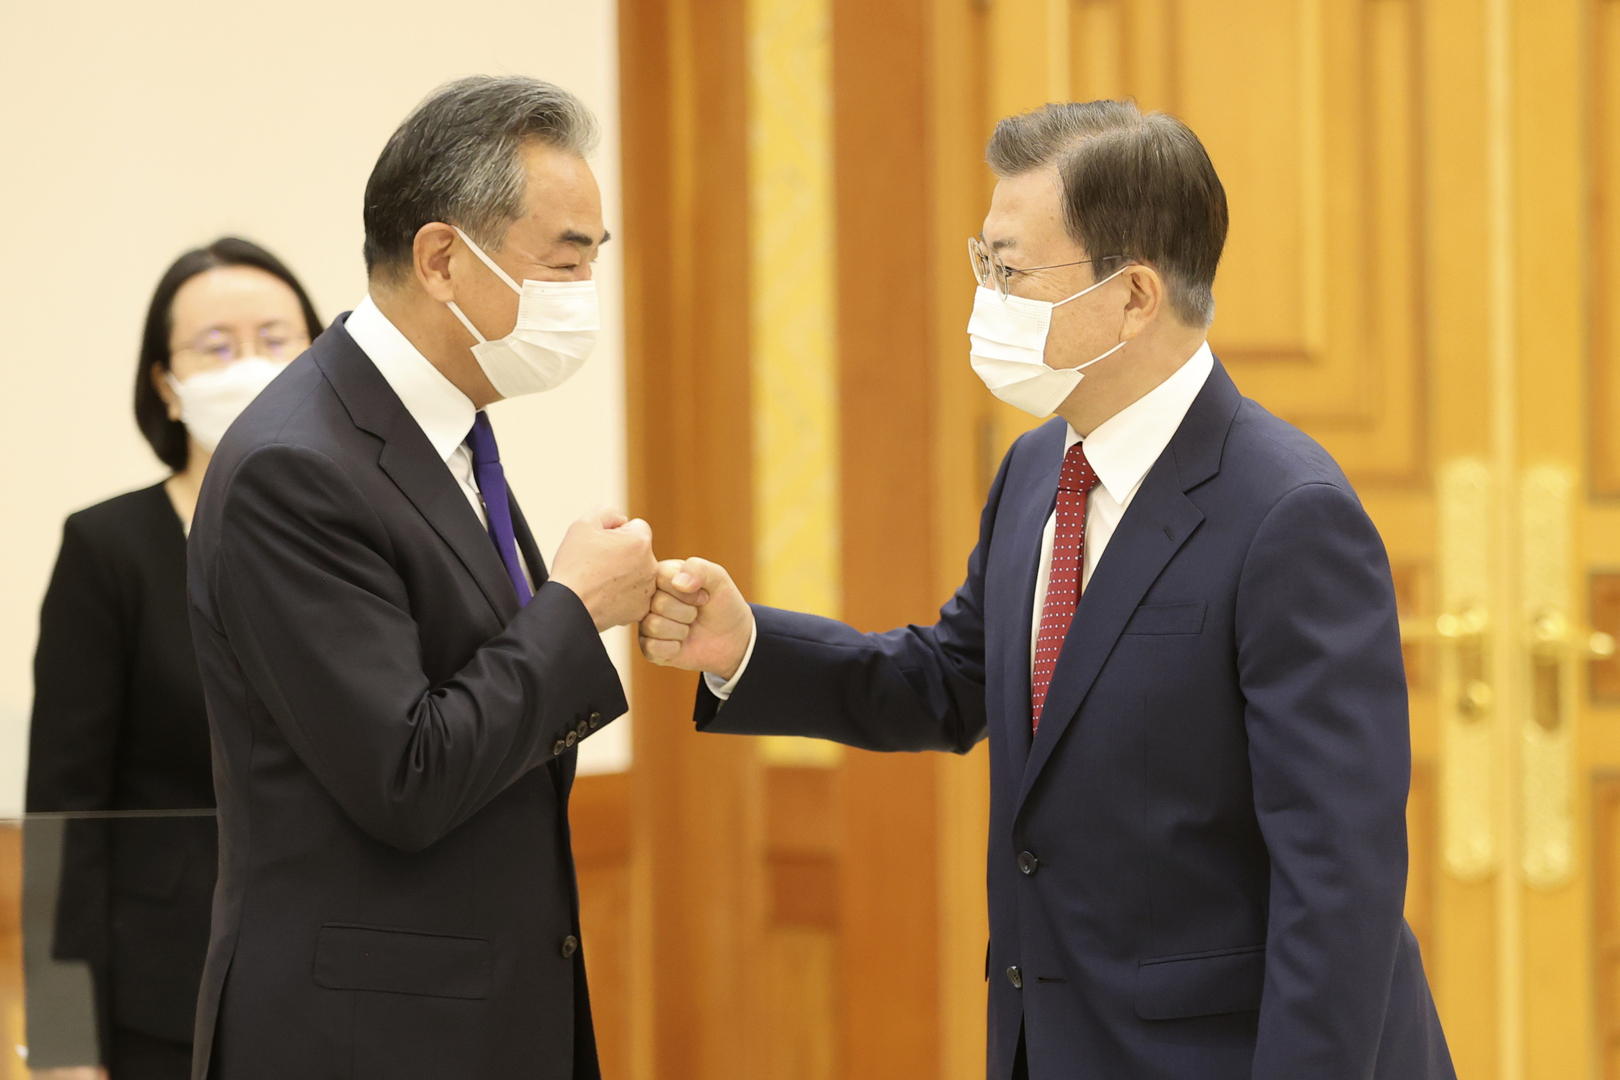 مون يطلب دعم الصين لعملية السلام في شبه الجزيرة الكورية